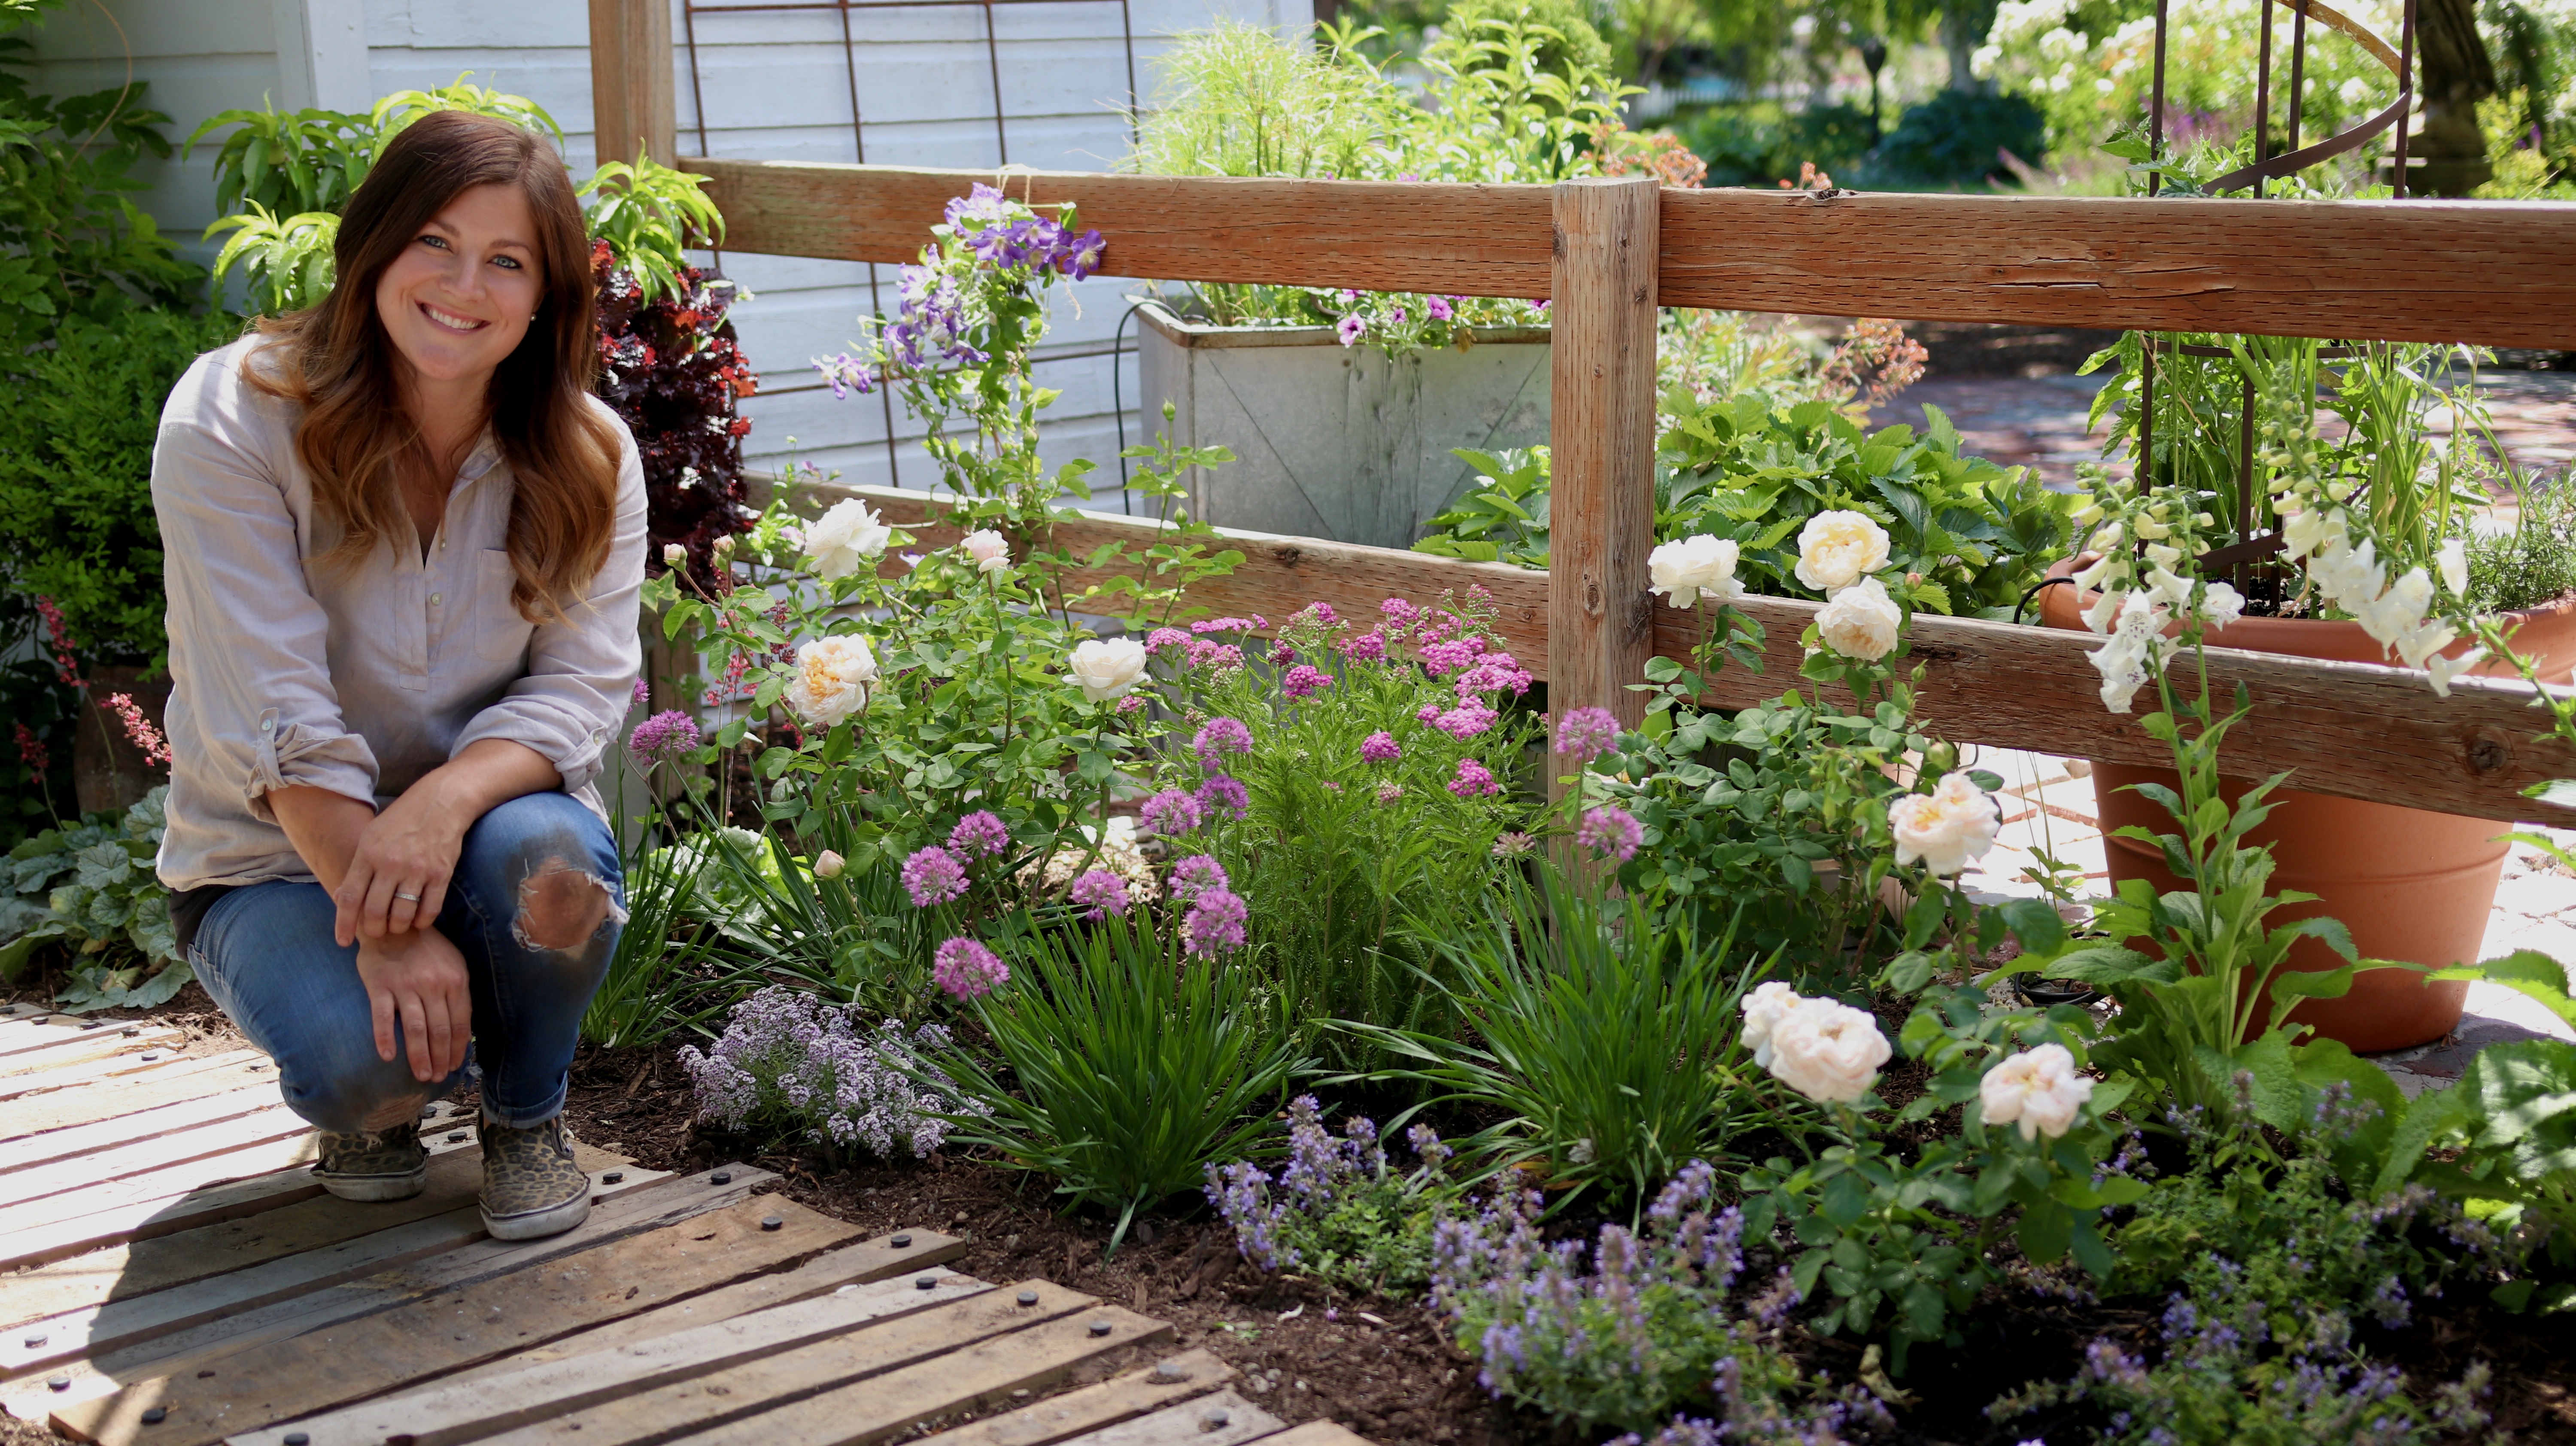 Espoma Garden Answer S Design Tips For A Romantic Cottage Garden Espoma